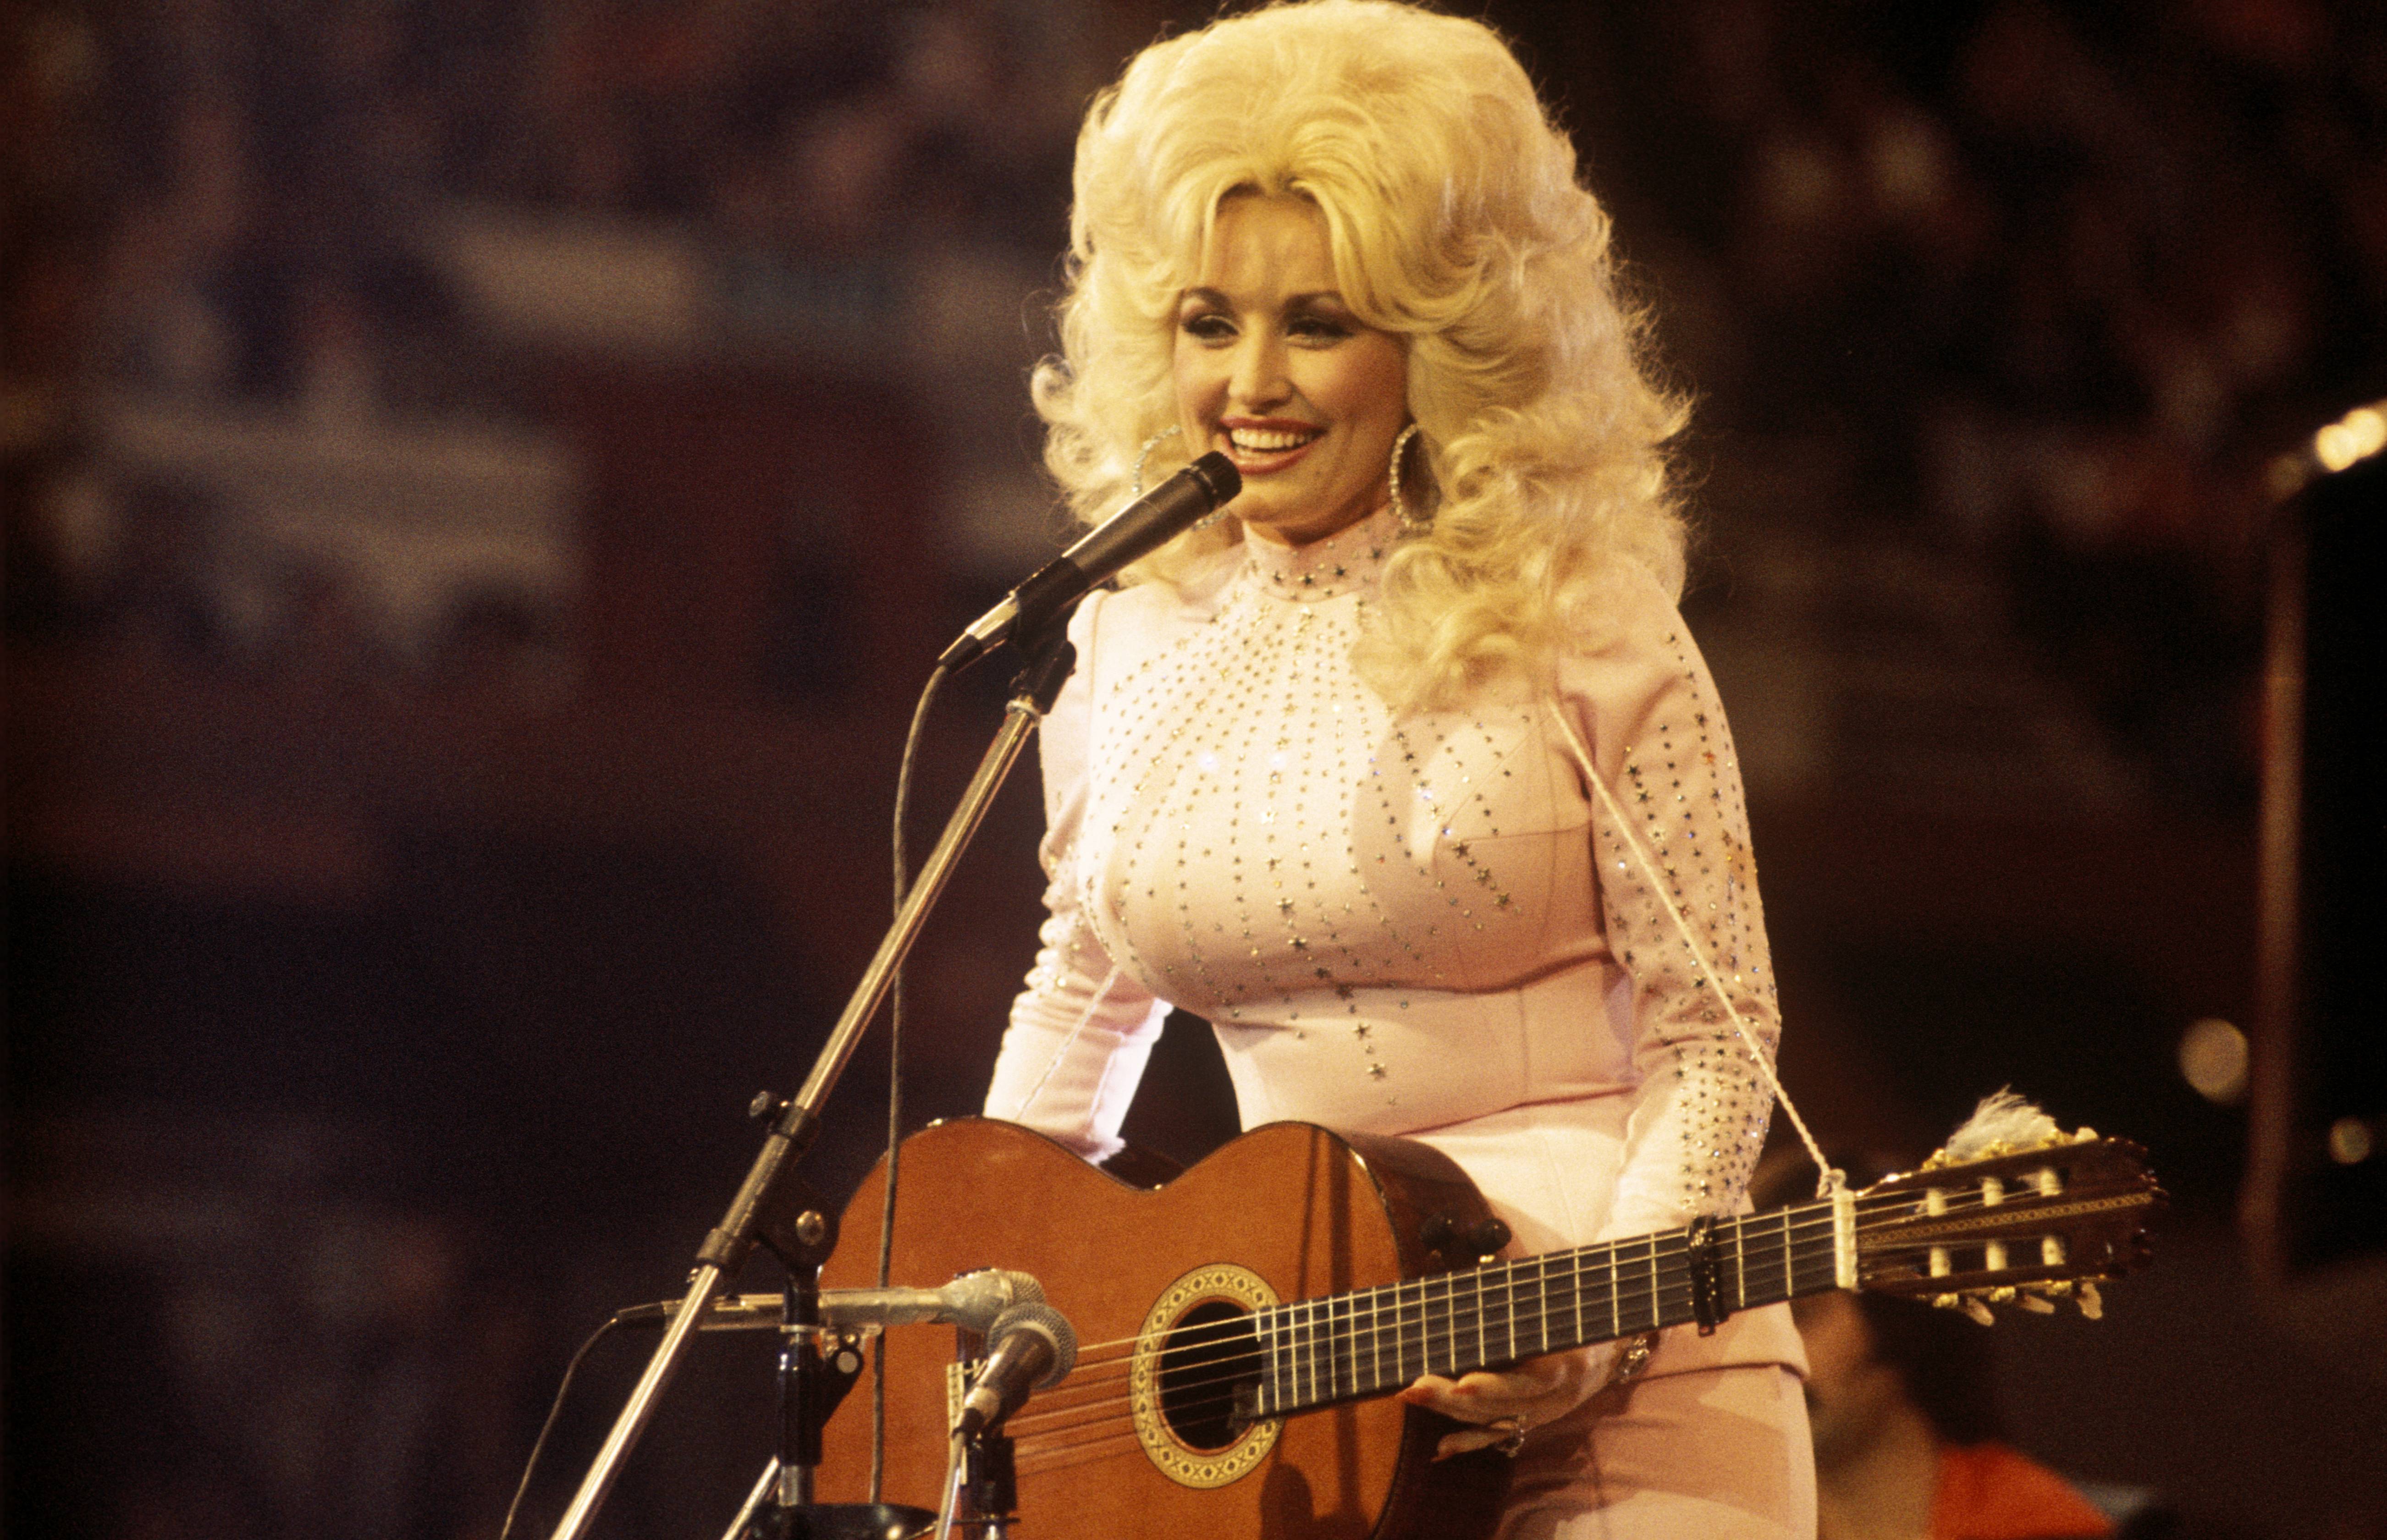 Dolly Parton a aidé sa grand-mère "invalide" alors qu'aucun des autres petits-enfants ne le ferait - elle lui faisait aussi des blagues